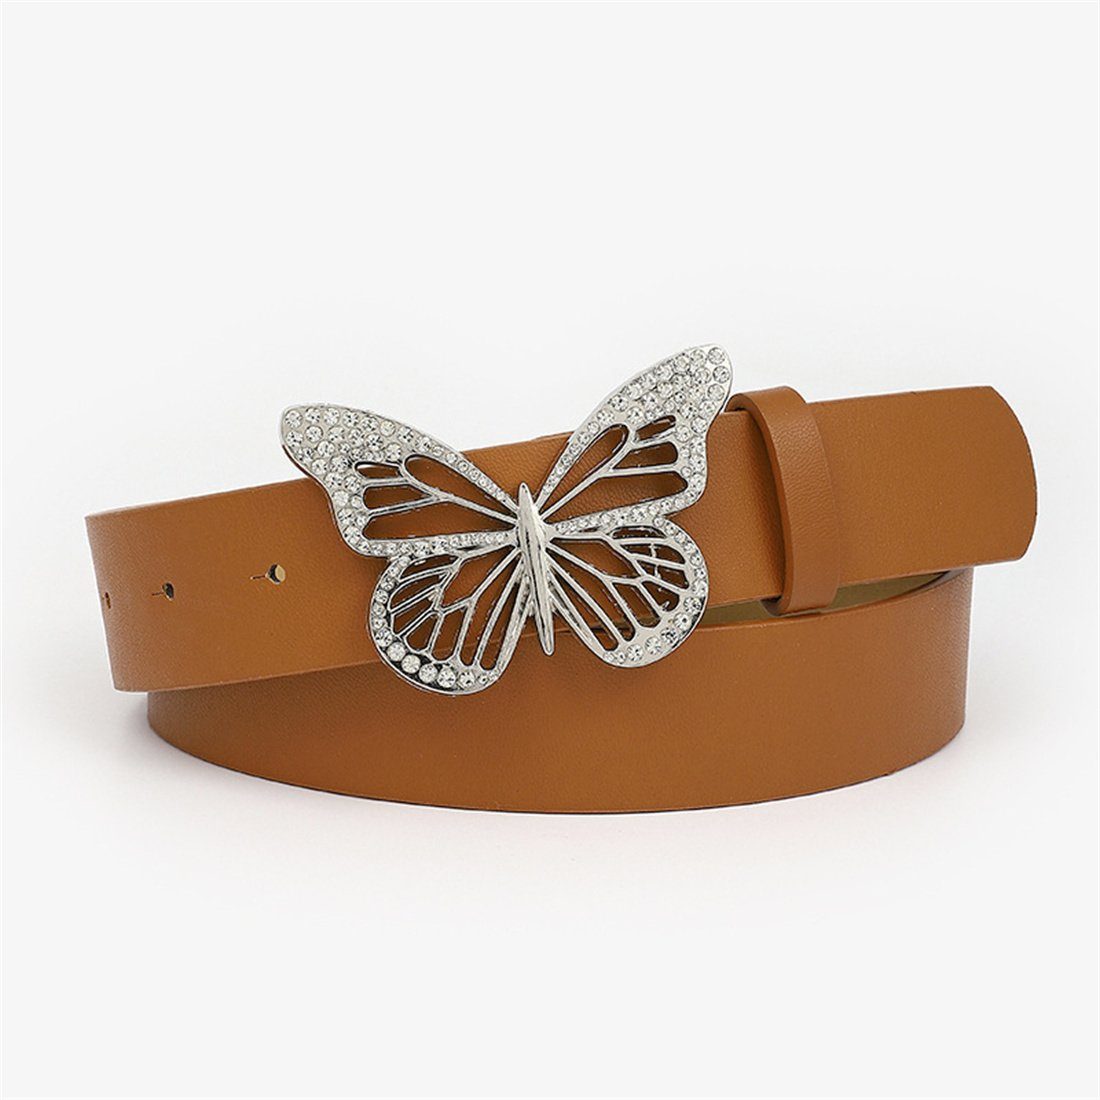 LYDMN Ledergürtel Damen Strassgürtel mit Schmetterlingsschnalle, Mode Gürtel  Zubehör